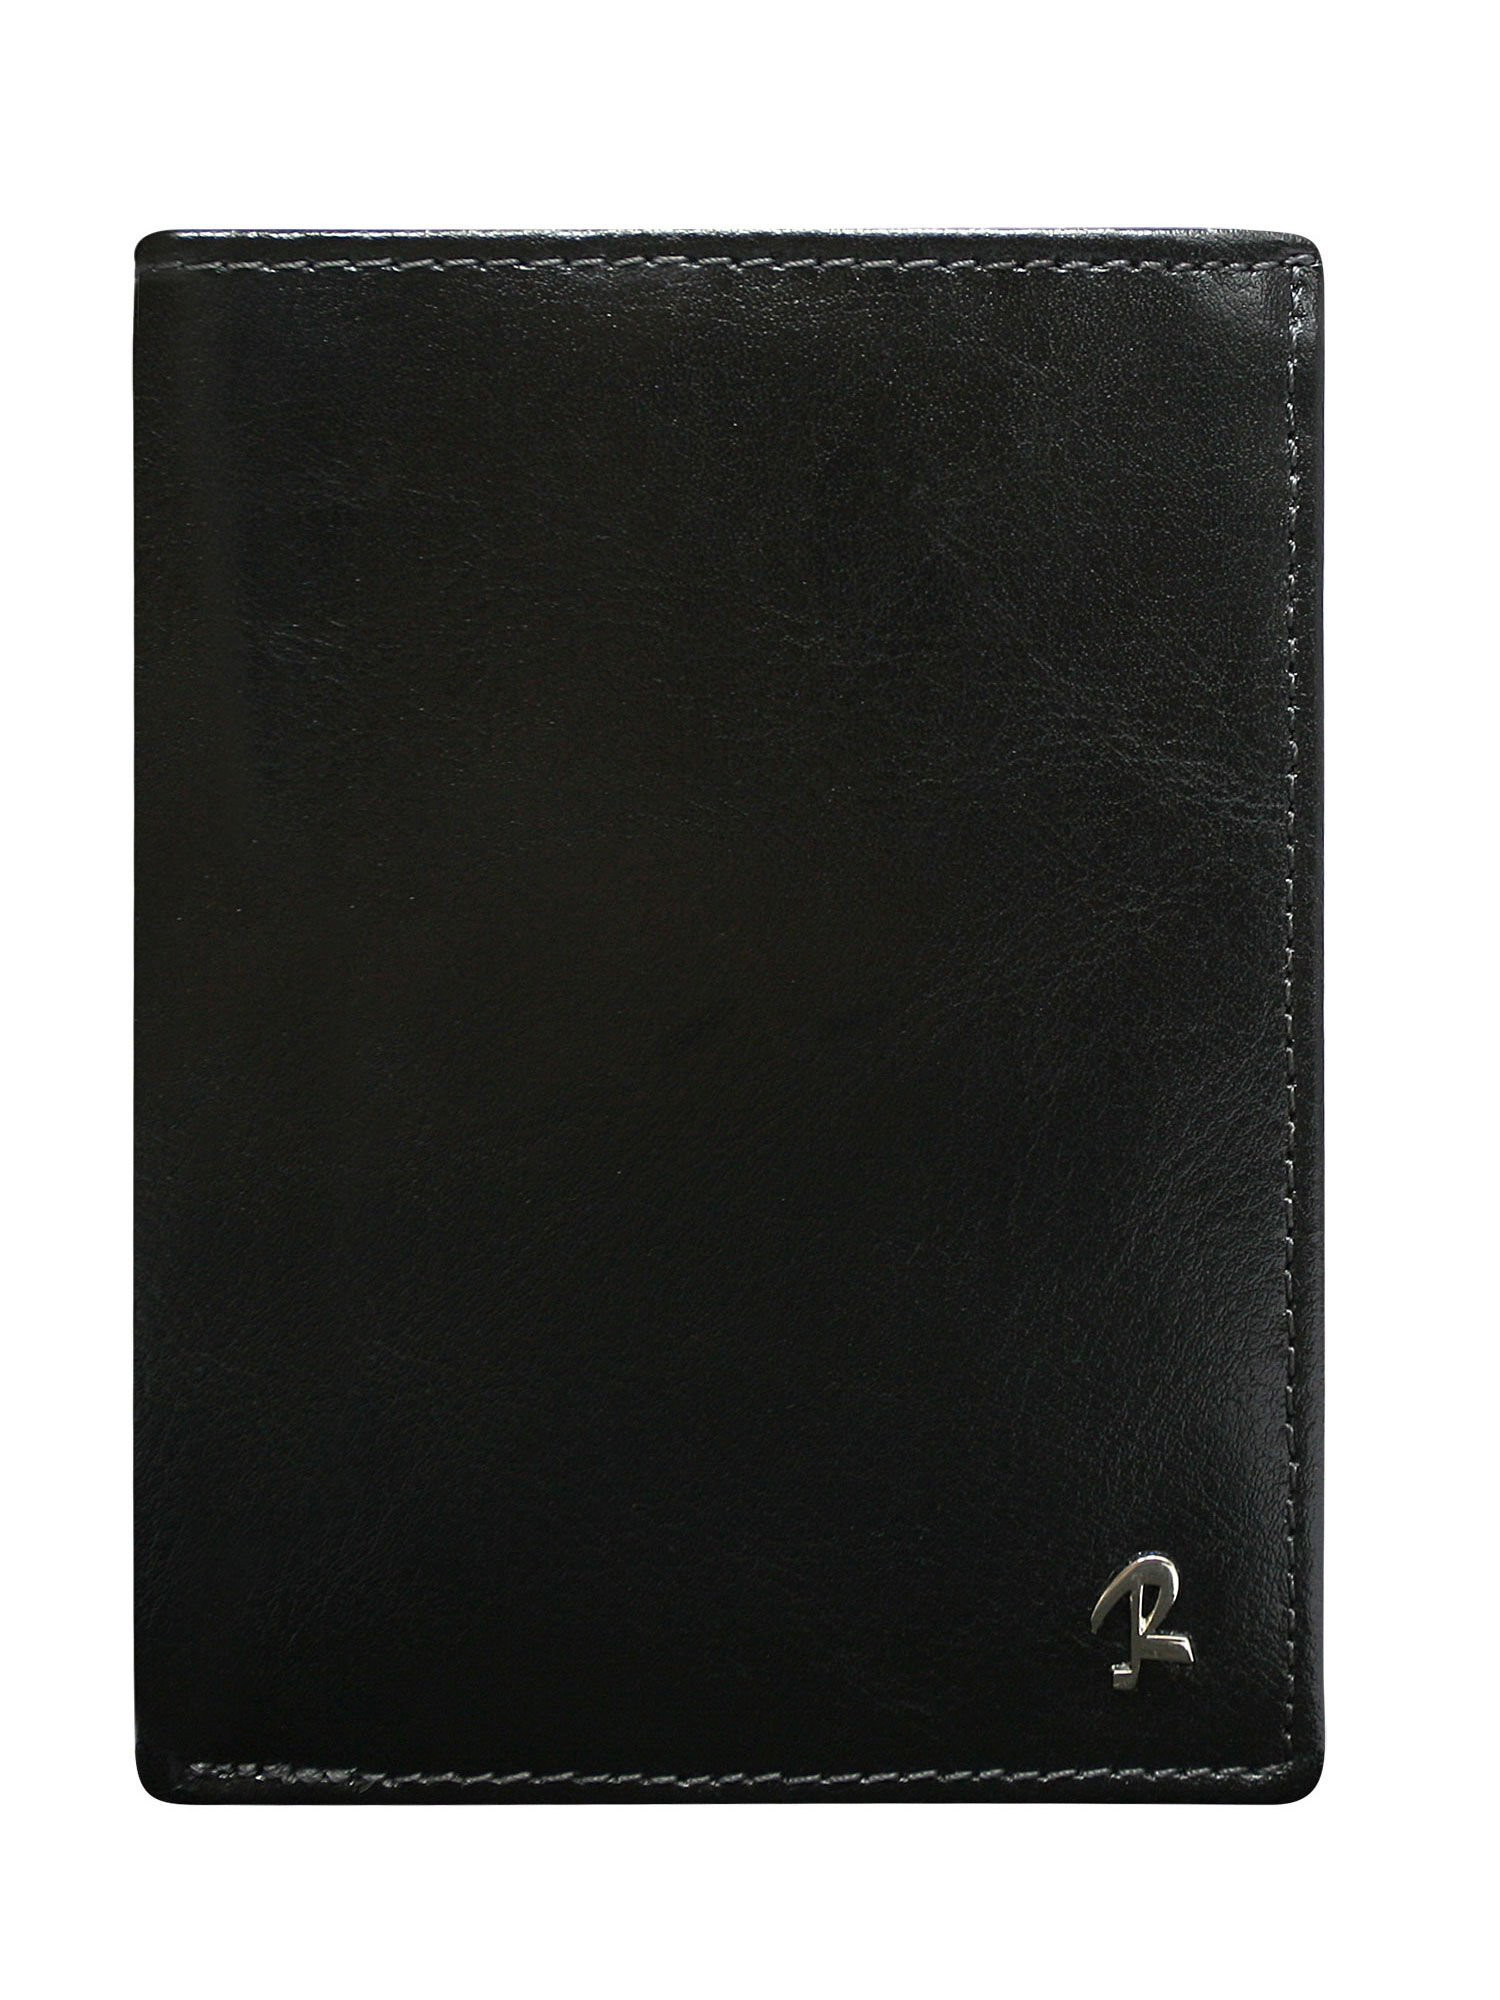 Peněženka CE PR černá jedna velikost model 14831660 - FPrice